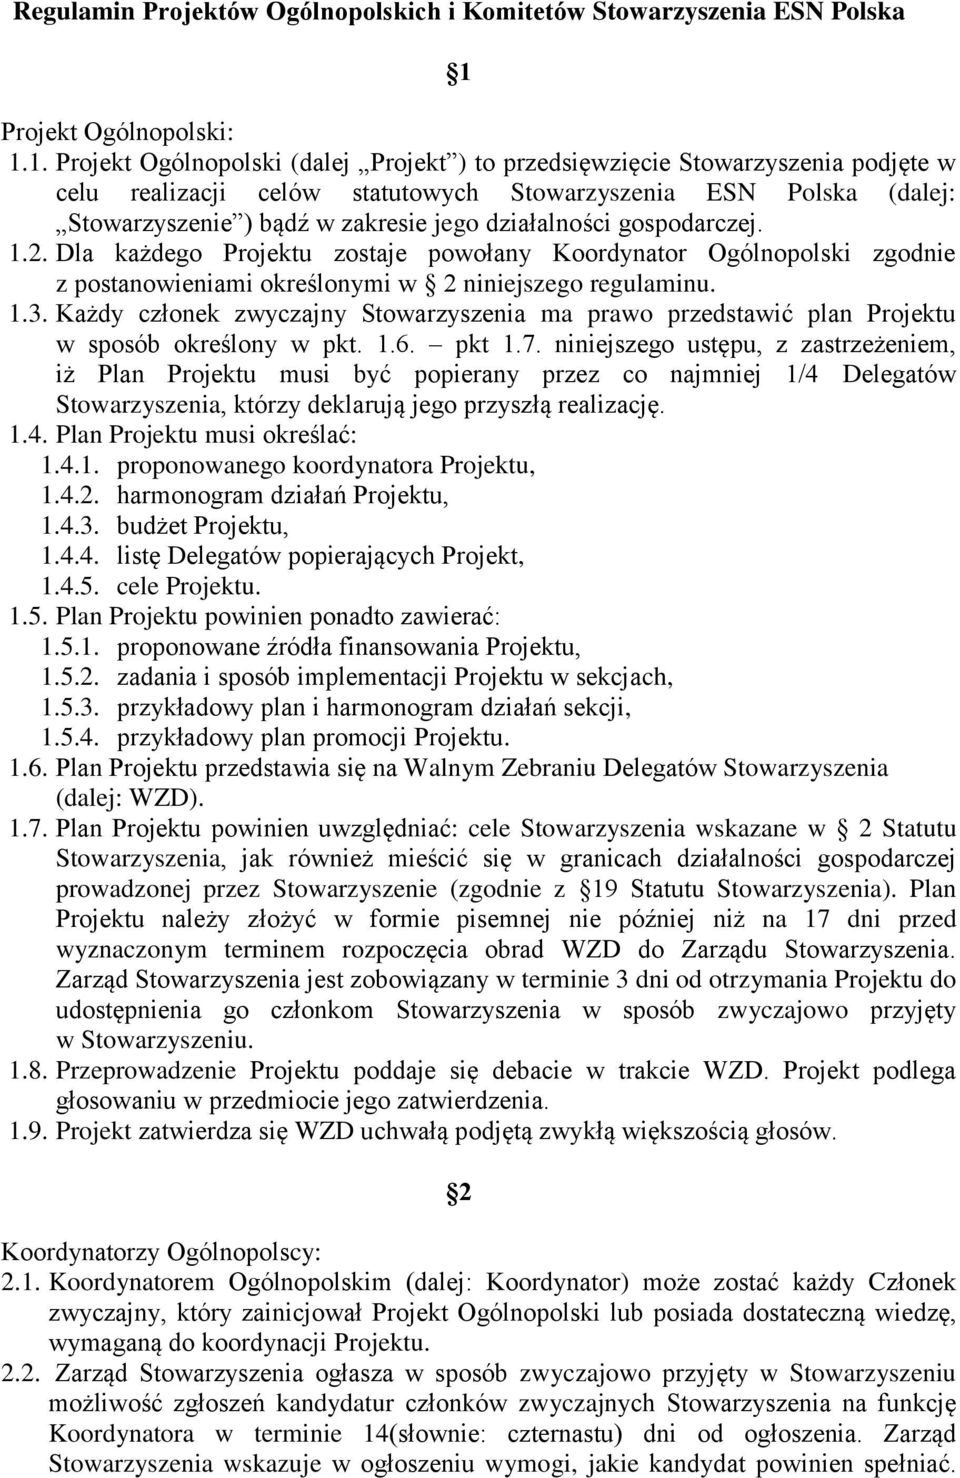 1. Projekt Ogólnopolski (dalej Projekt ) to przedsięwzięcie Stowarzyszenia podjęte w celu realizacji celów statutowych Stowarzyszenia ESN Polska (dalej: Stowarzyszenie ) bądź w zakresie jego